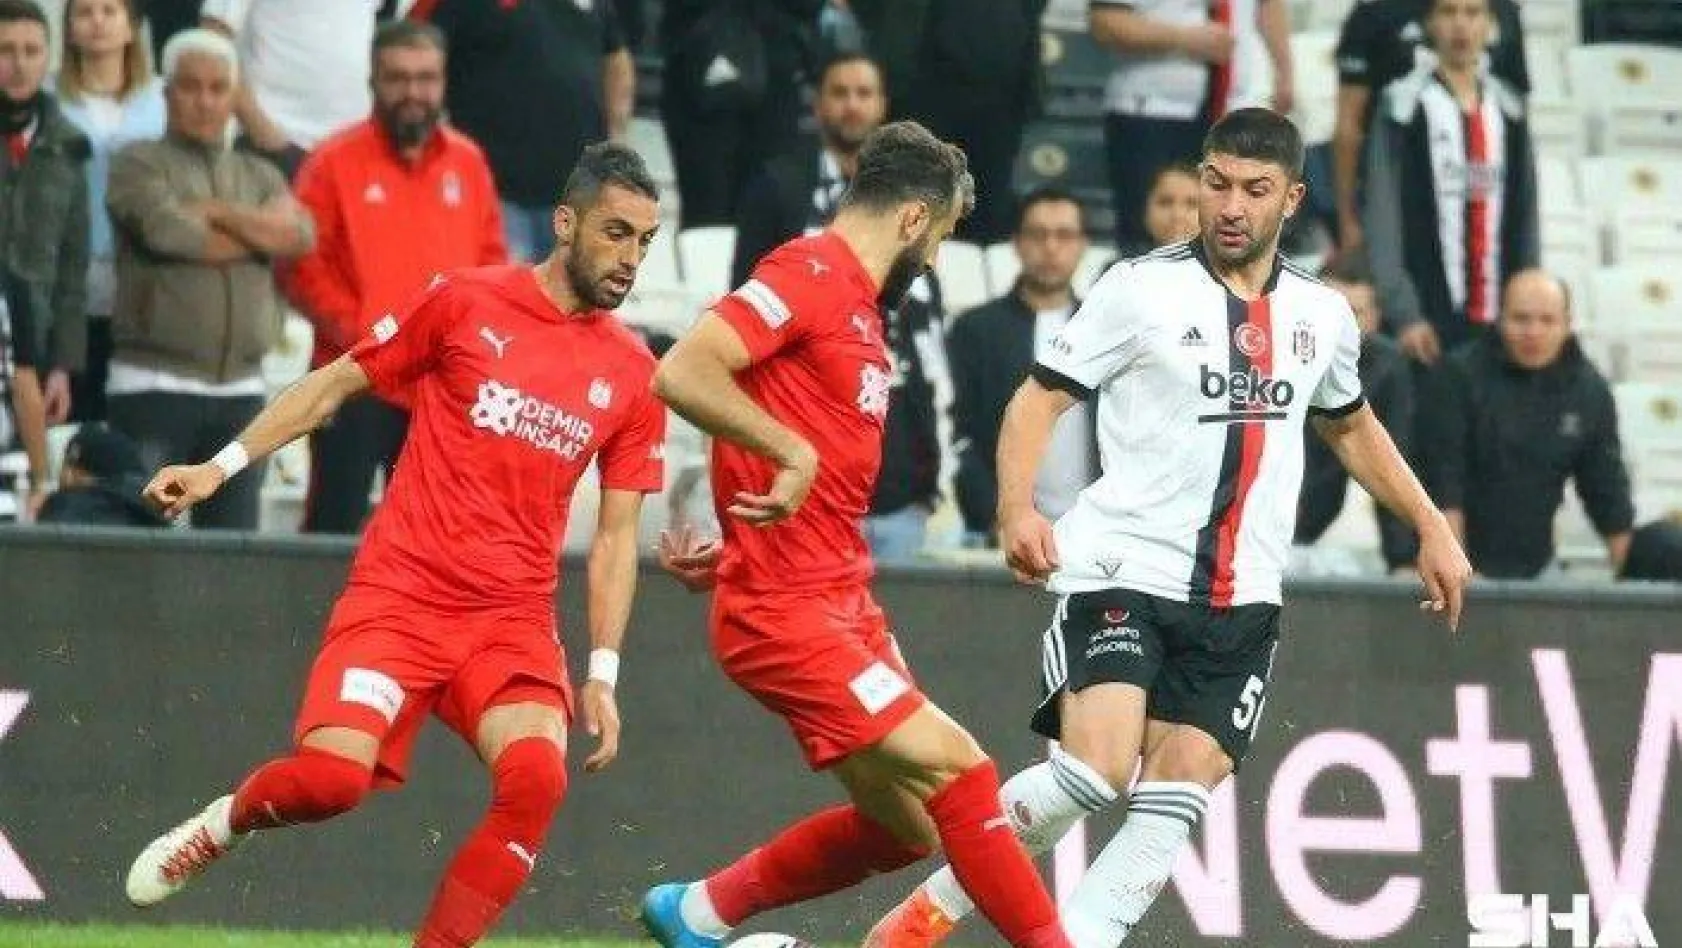 Süper Lig: Beşiktaş: 2 - DG Sivasspor: 1 (Maç sonucu)